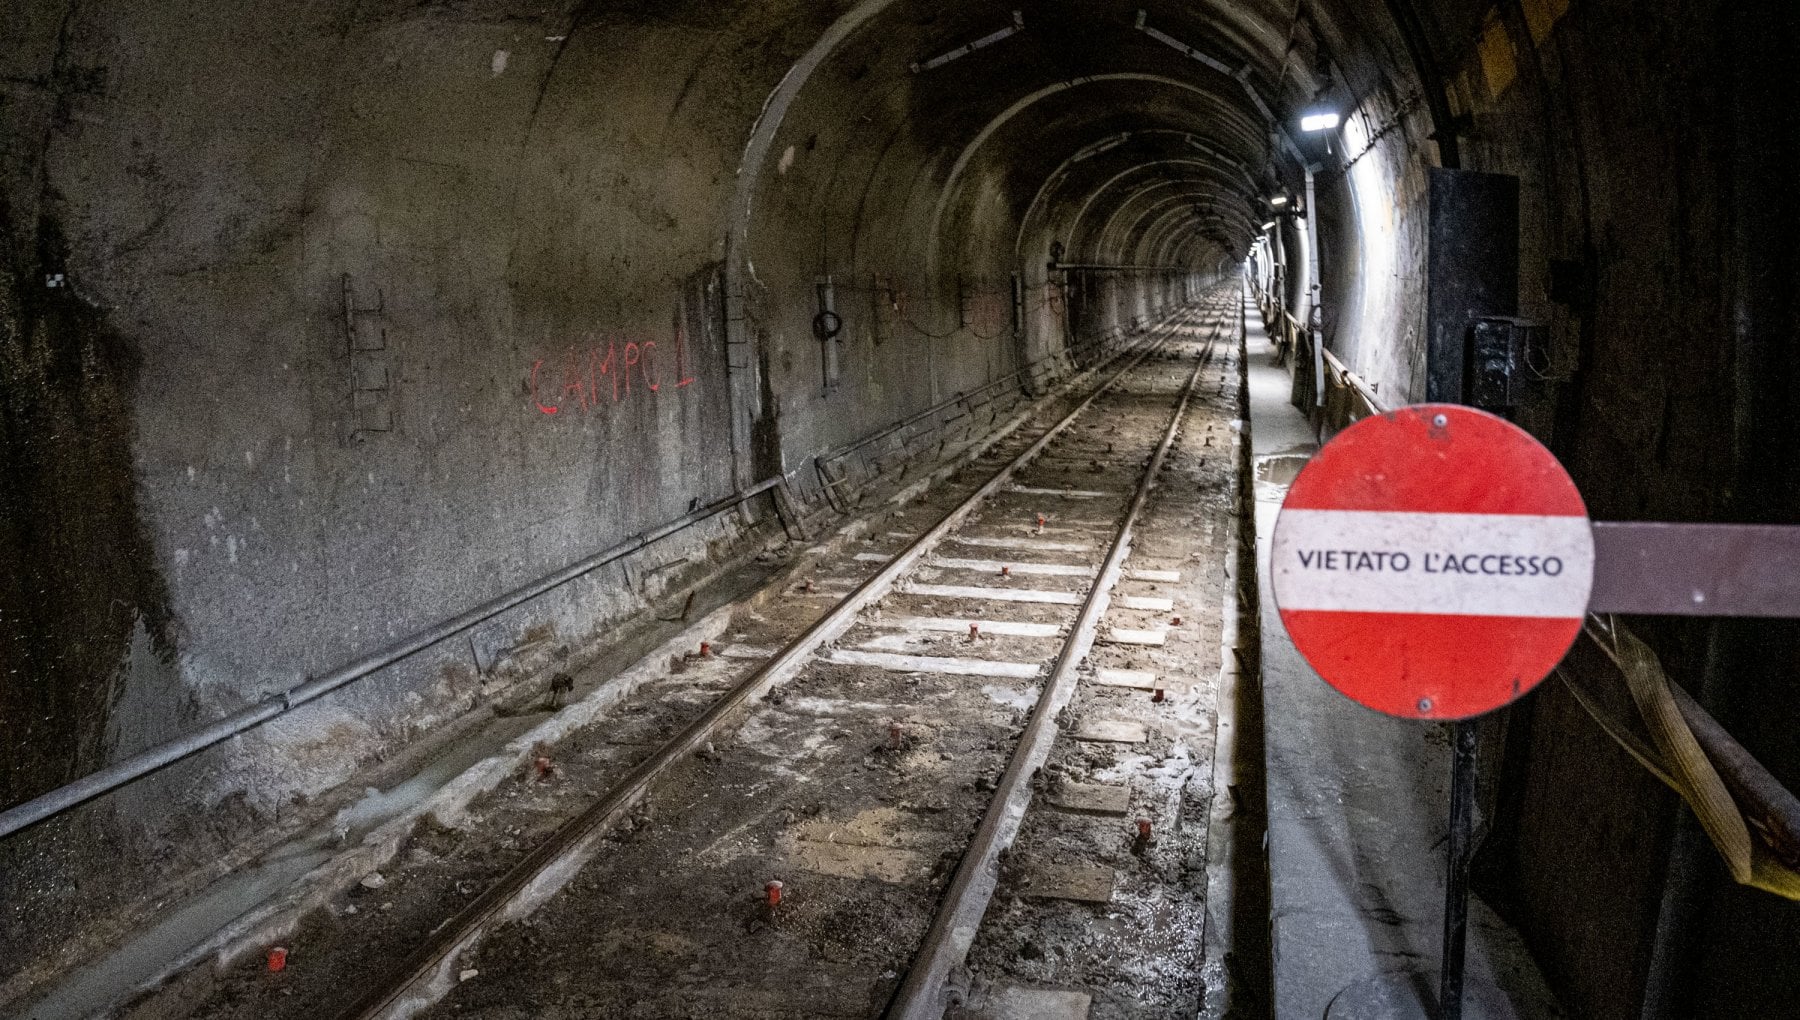 Camminavano nel tunnel della metropolitana, fermati: "Siamo esploratori urbani"